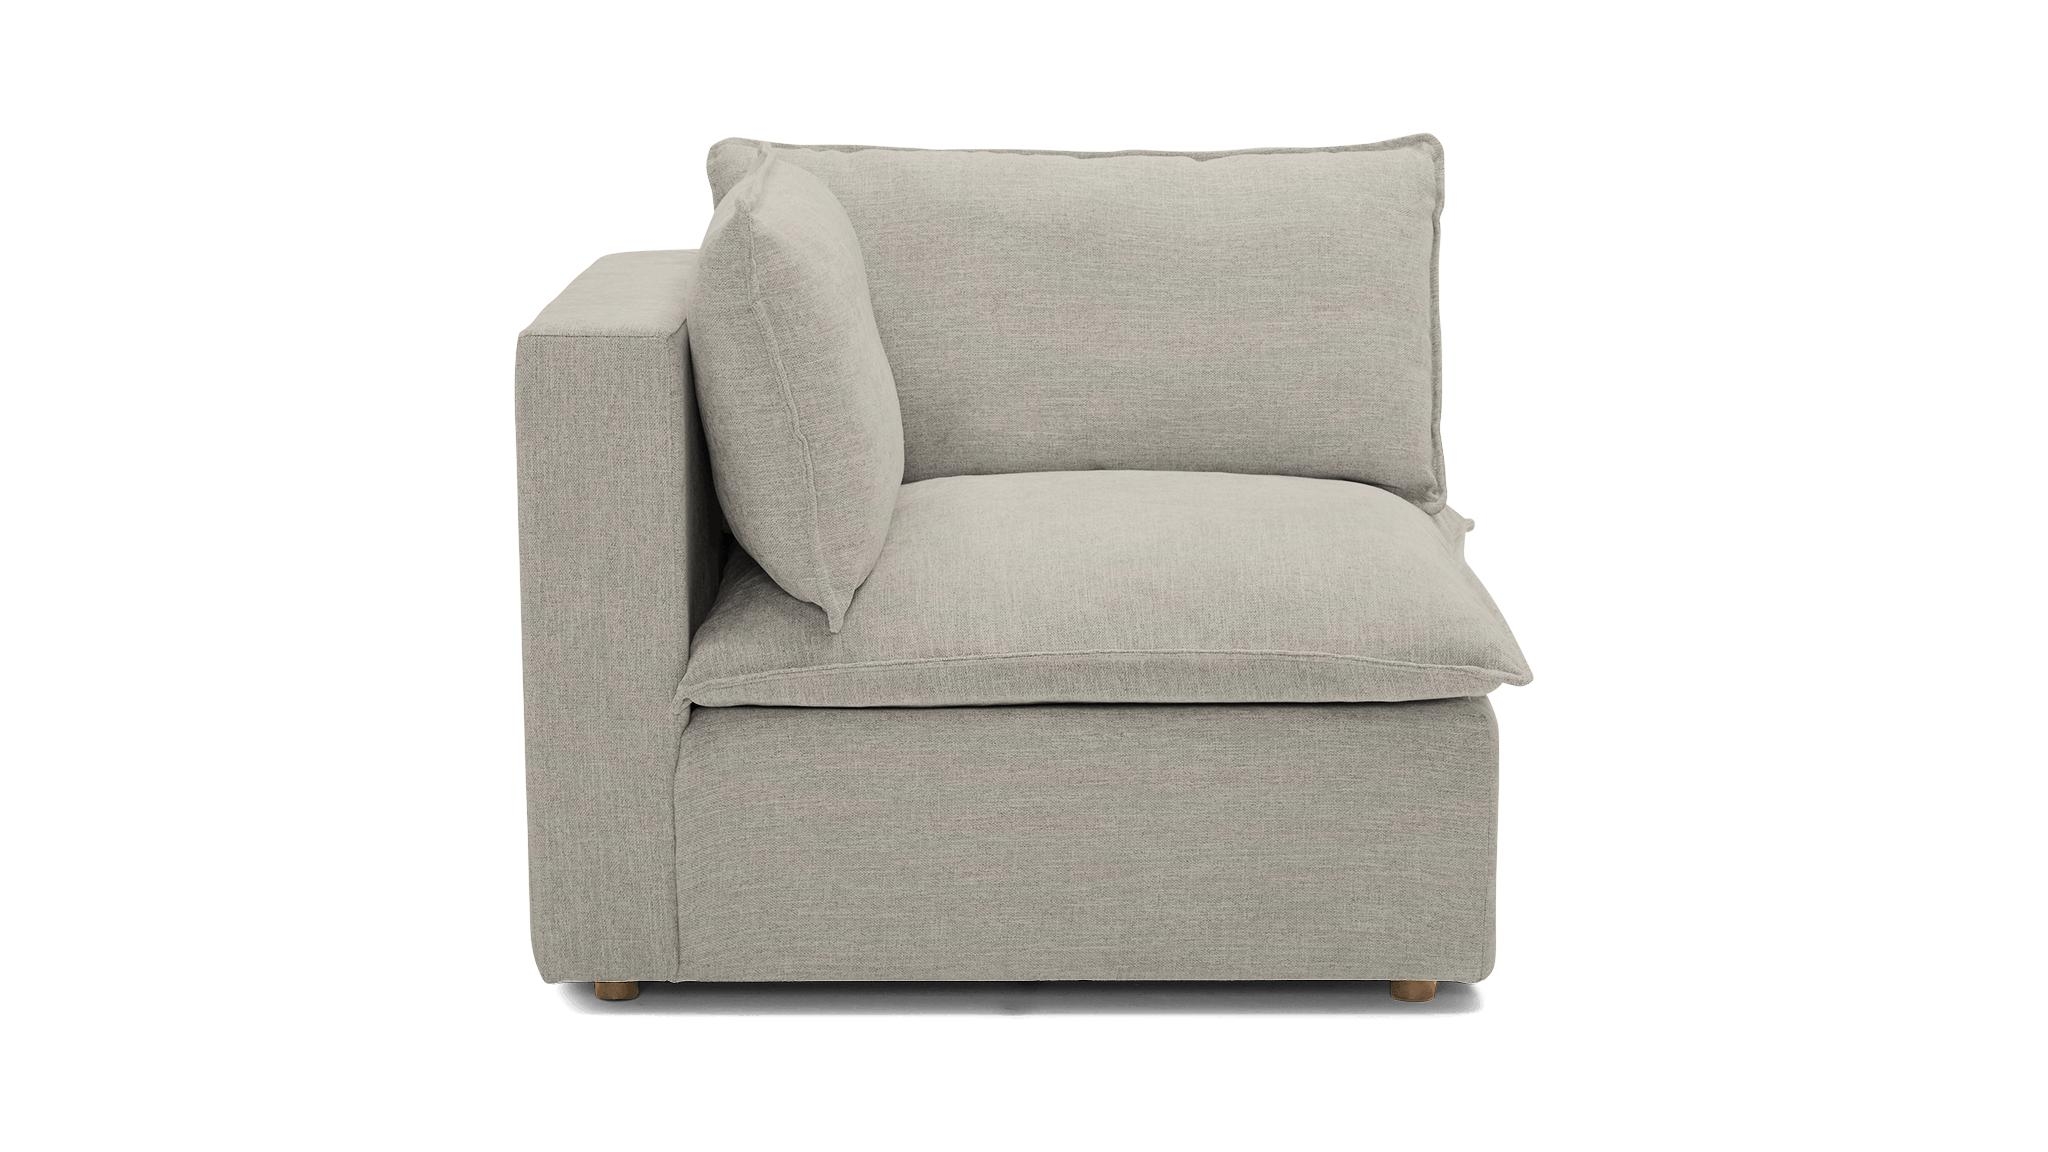 White Haine Mid Century Modern Corner Chair - Bloke Cotton - Image 0